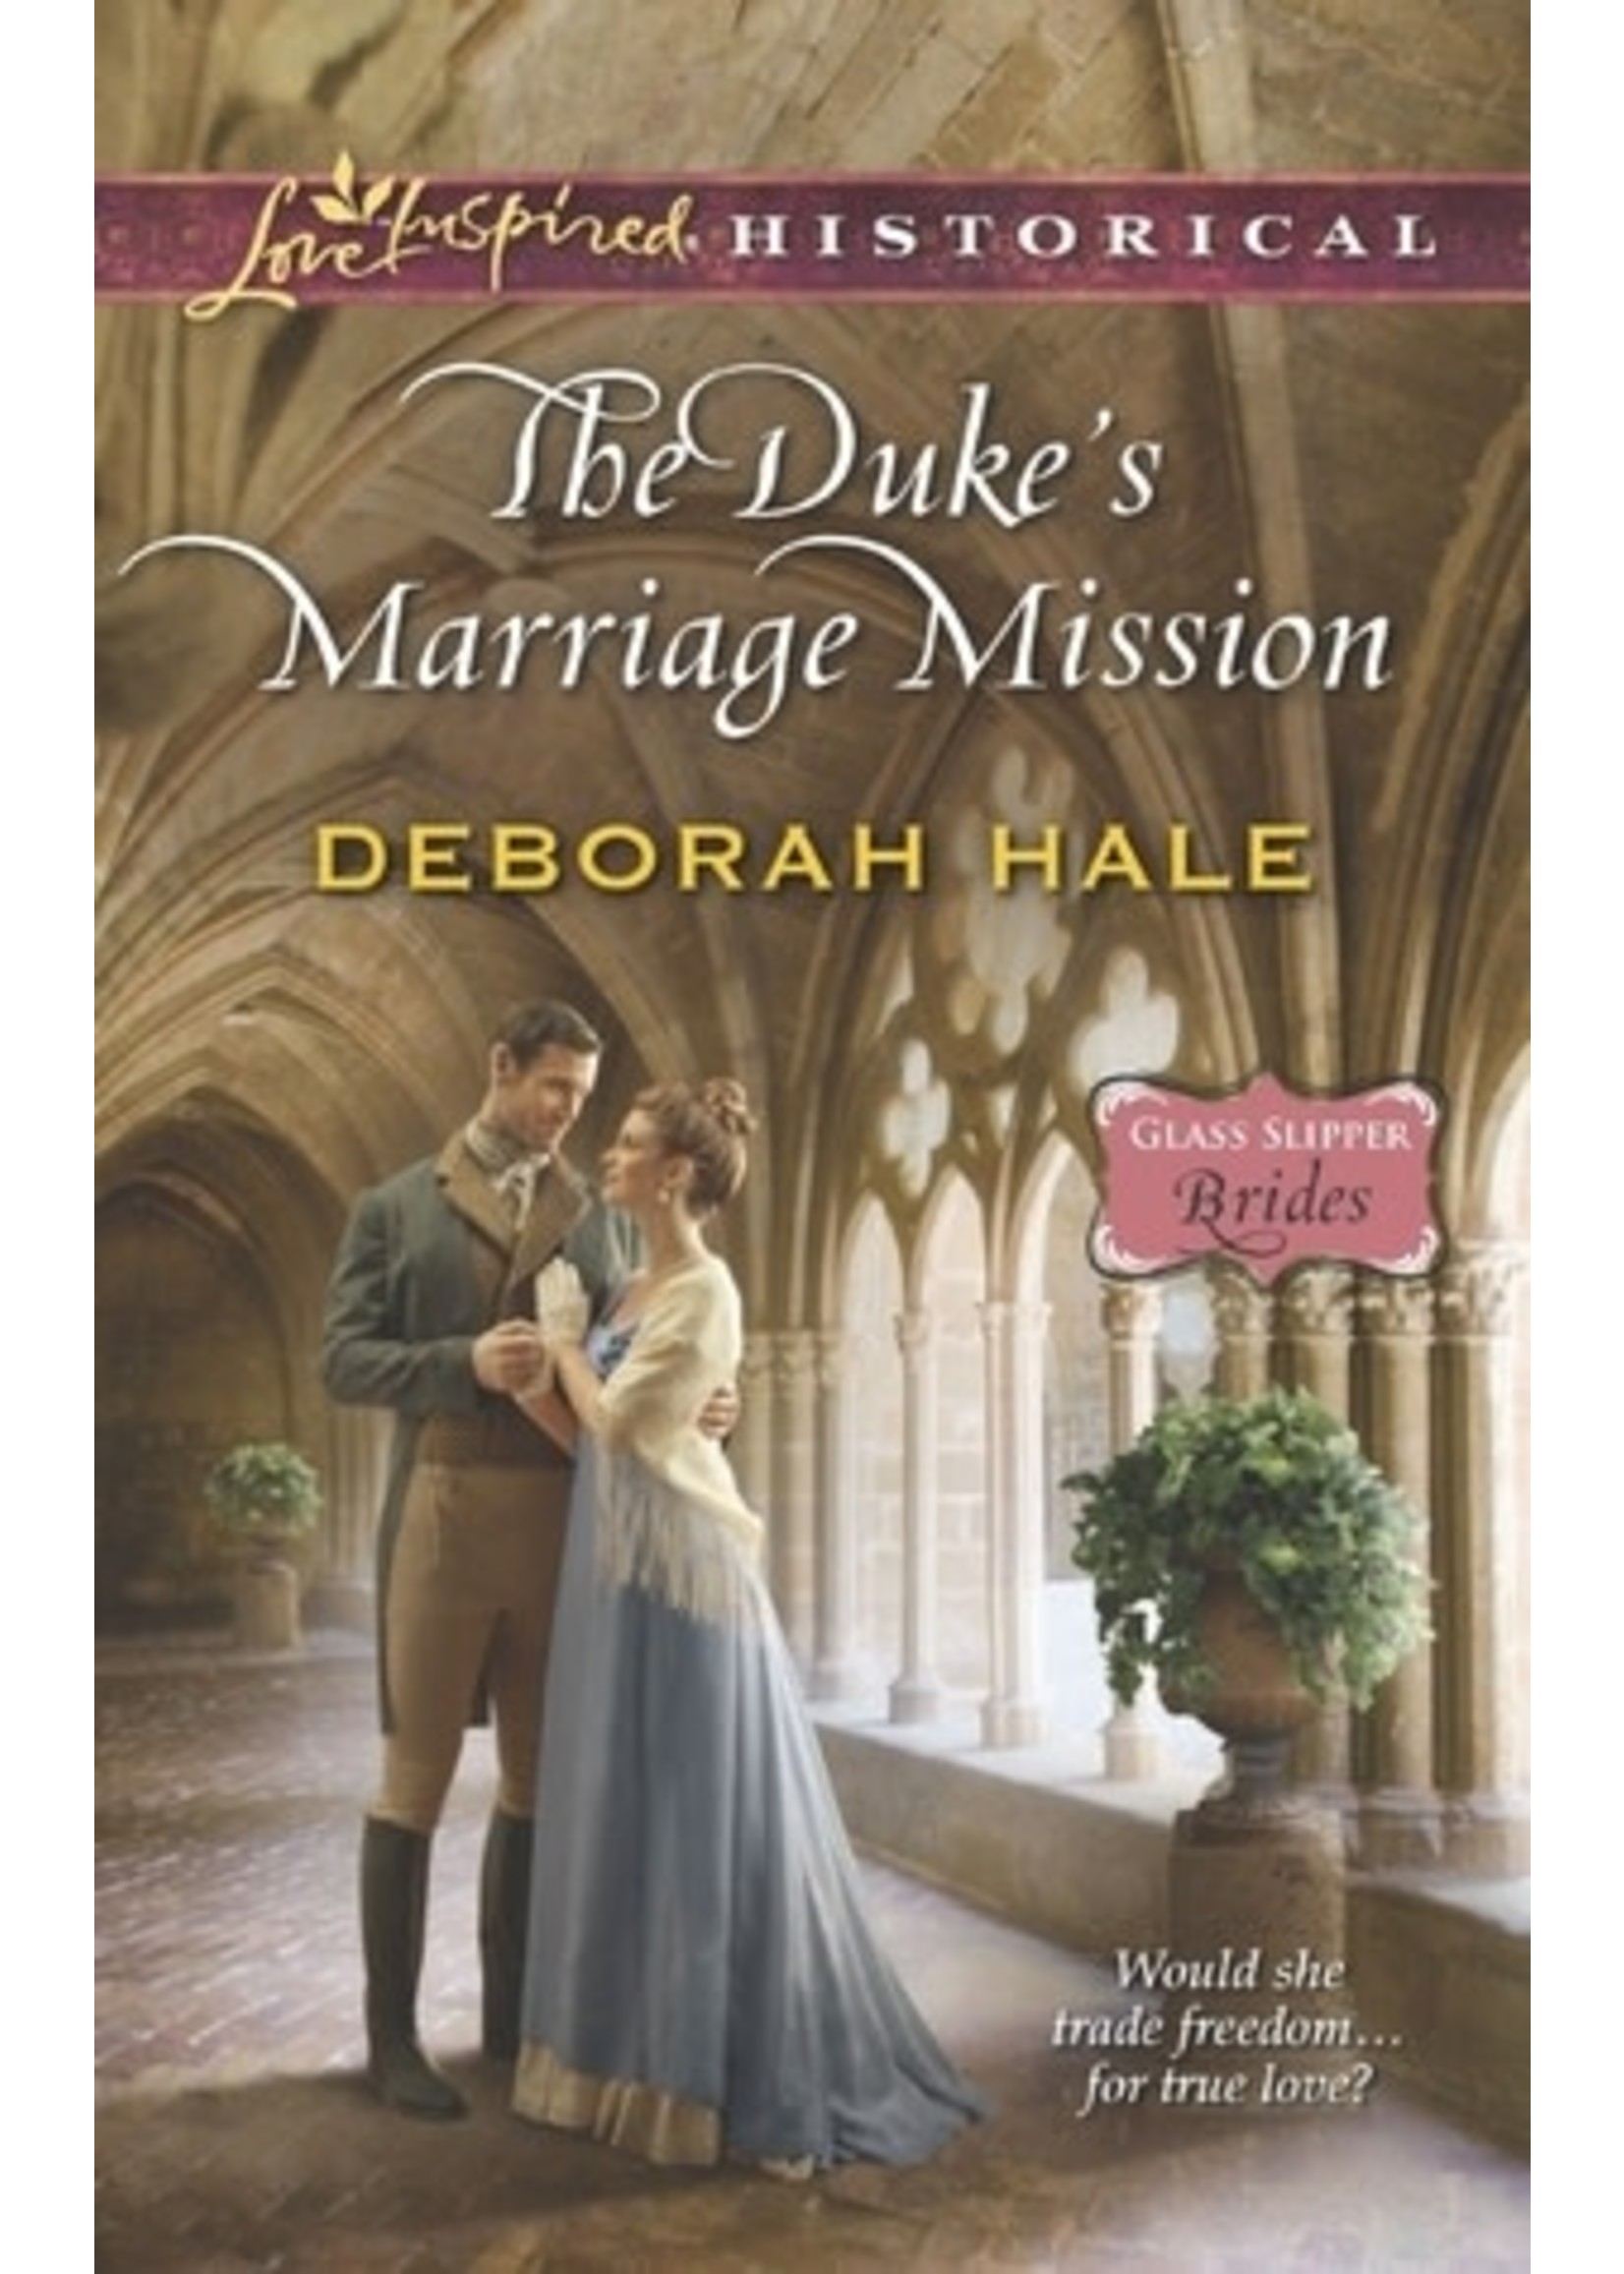 The Duke's Marriage Mission by Deborah Hale